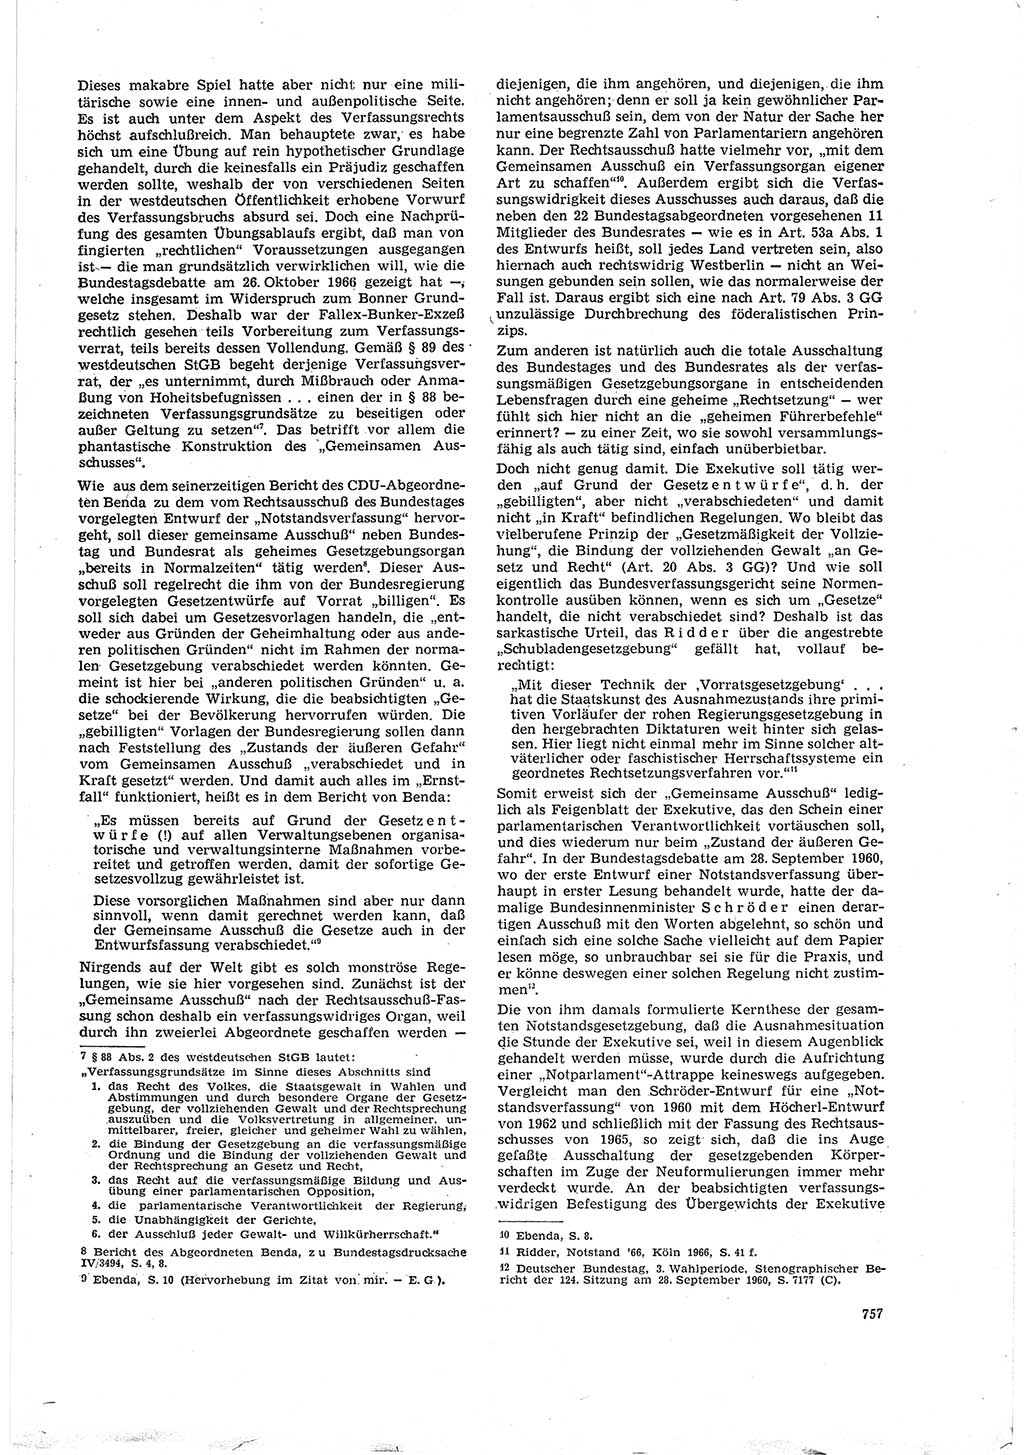 Neue Justiz (NJ), Zeitschrift für Recht und Rechtswissenschaft [Deutsche Demokratische Republik (DDR)], 20. Jahrgang 1966, Seite 757 (NJ DDR 1966, S. 757)